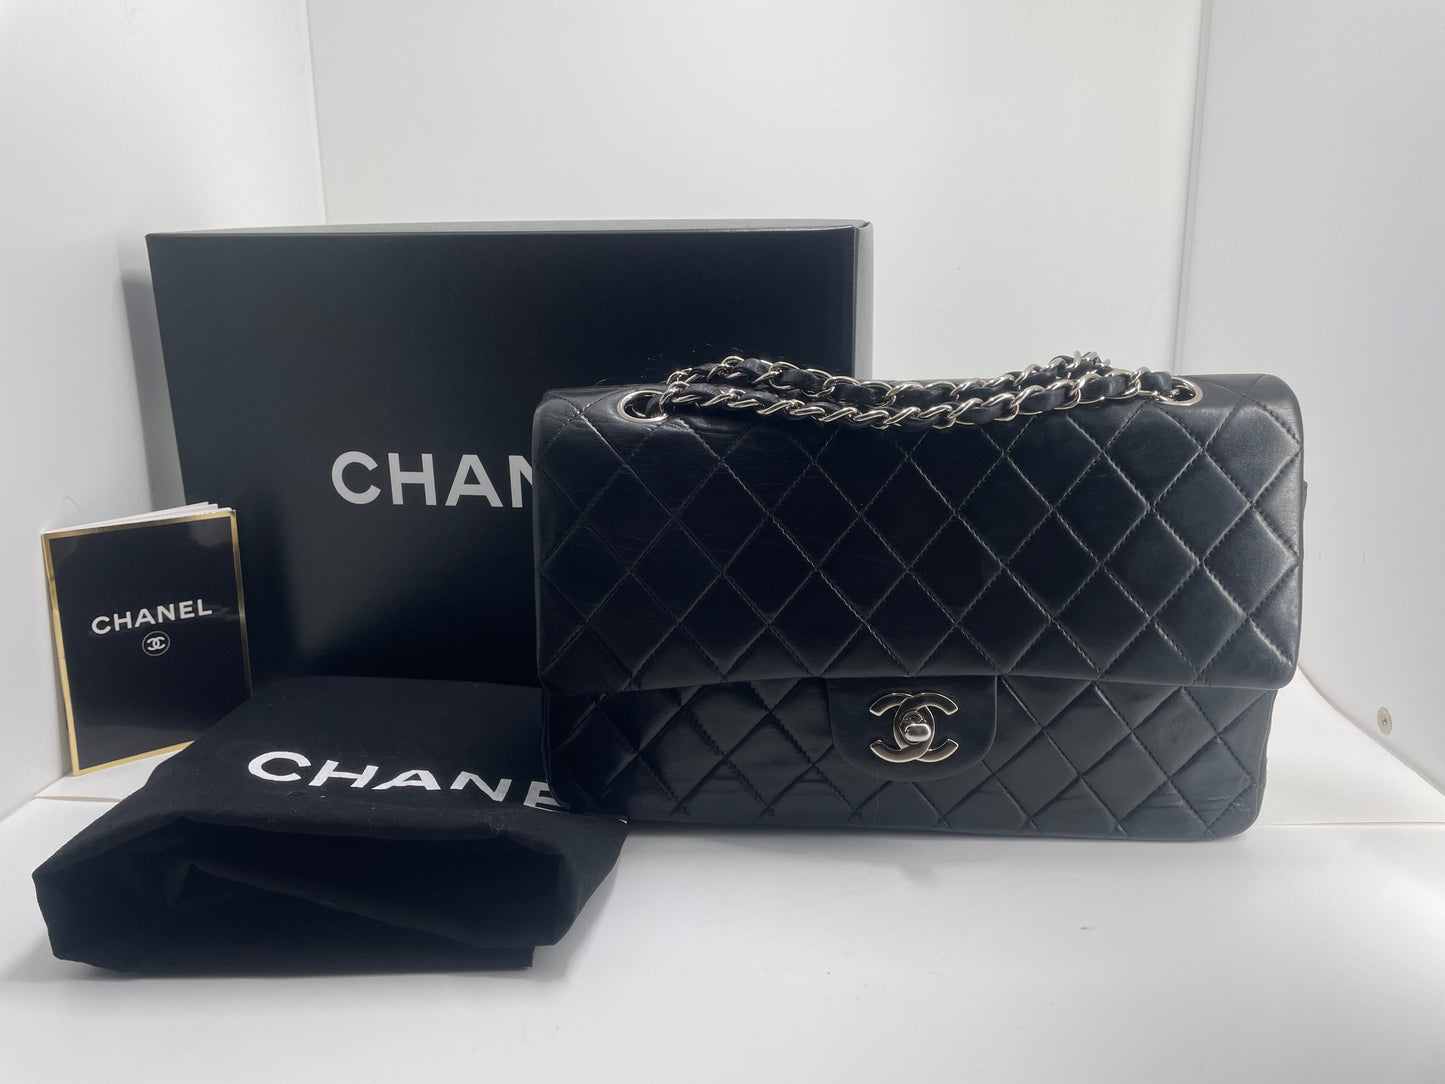 Sac à main Chanel Classique en cuir d'agneau noir et métal argenté.